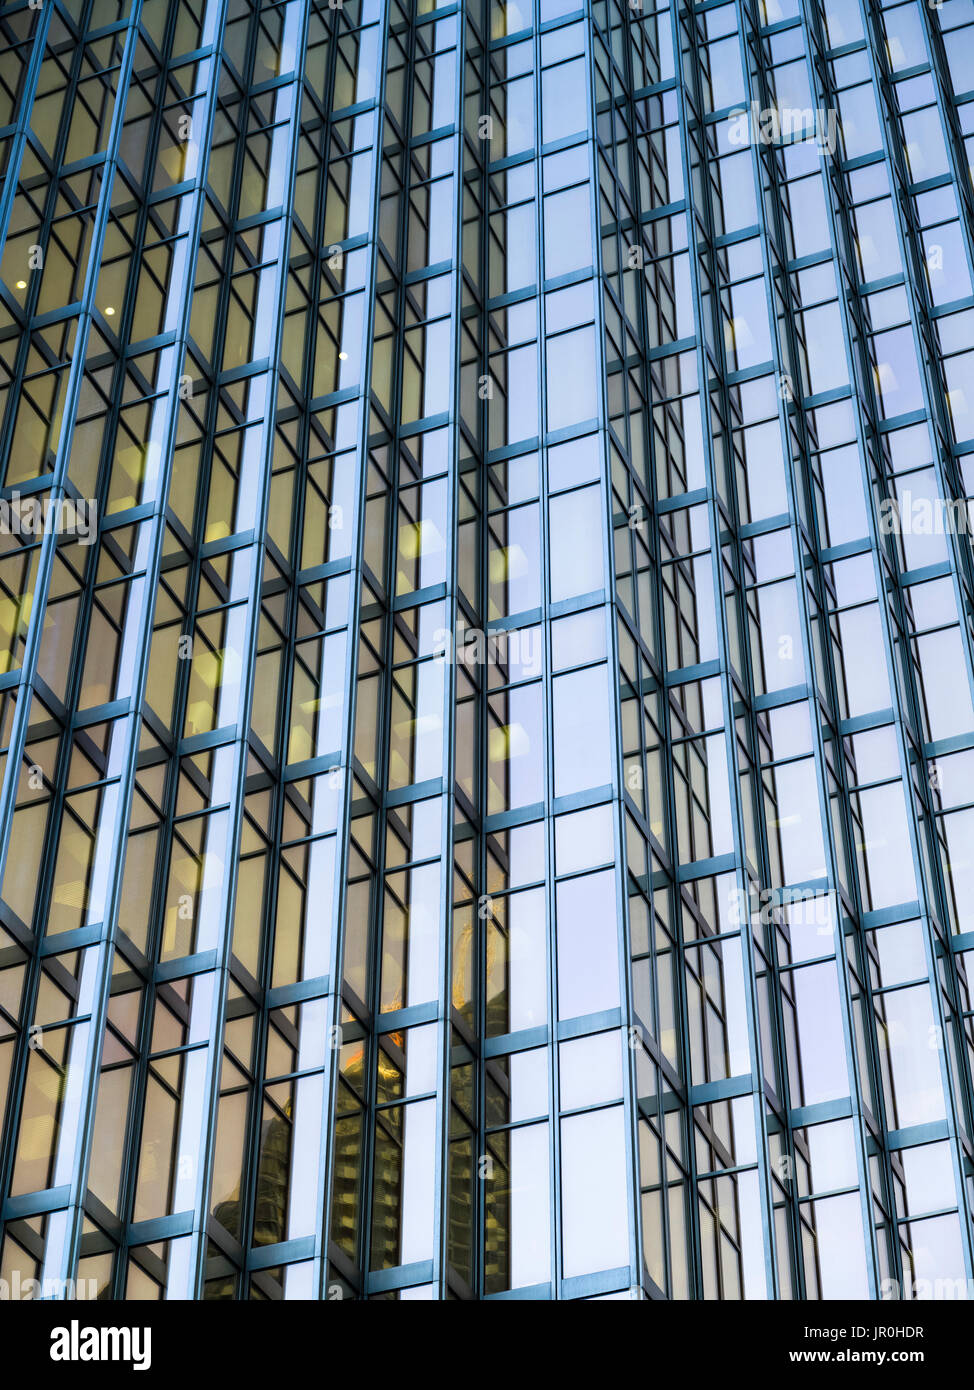 Vue de détail de la façade d'un immeuble de bureaux en verre, Royal Bank Plaza, à Toronto, Ontario, Canada Banque D'Images